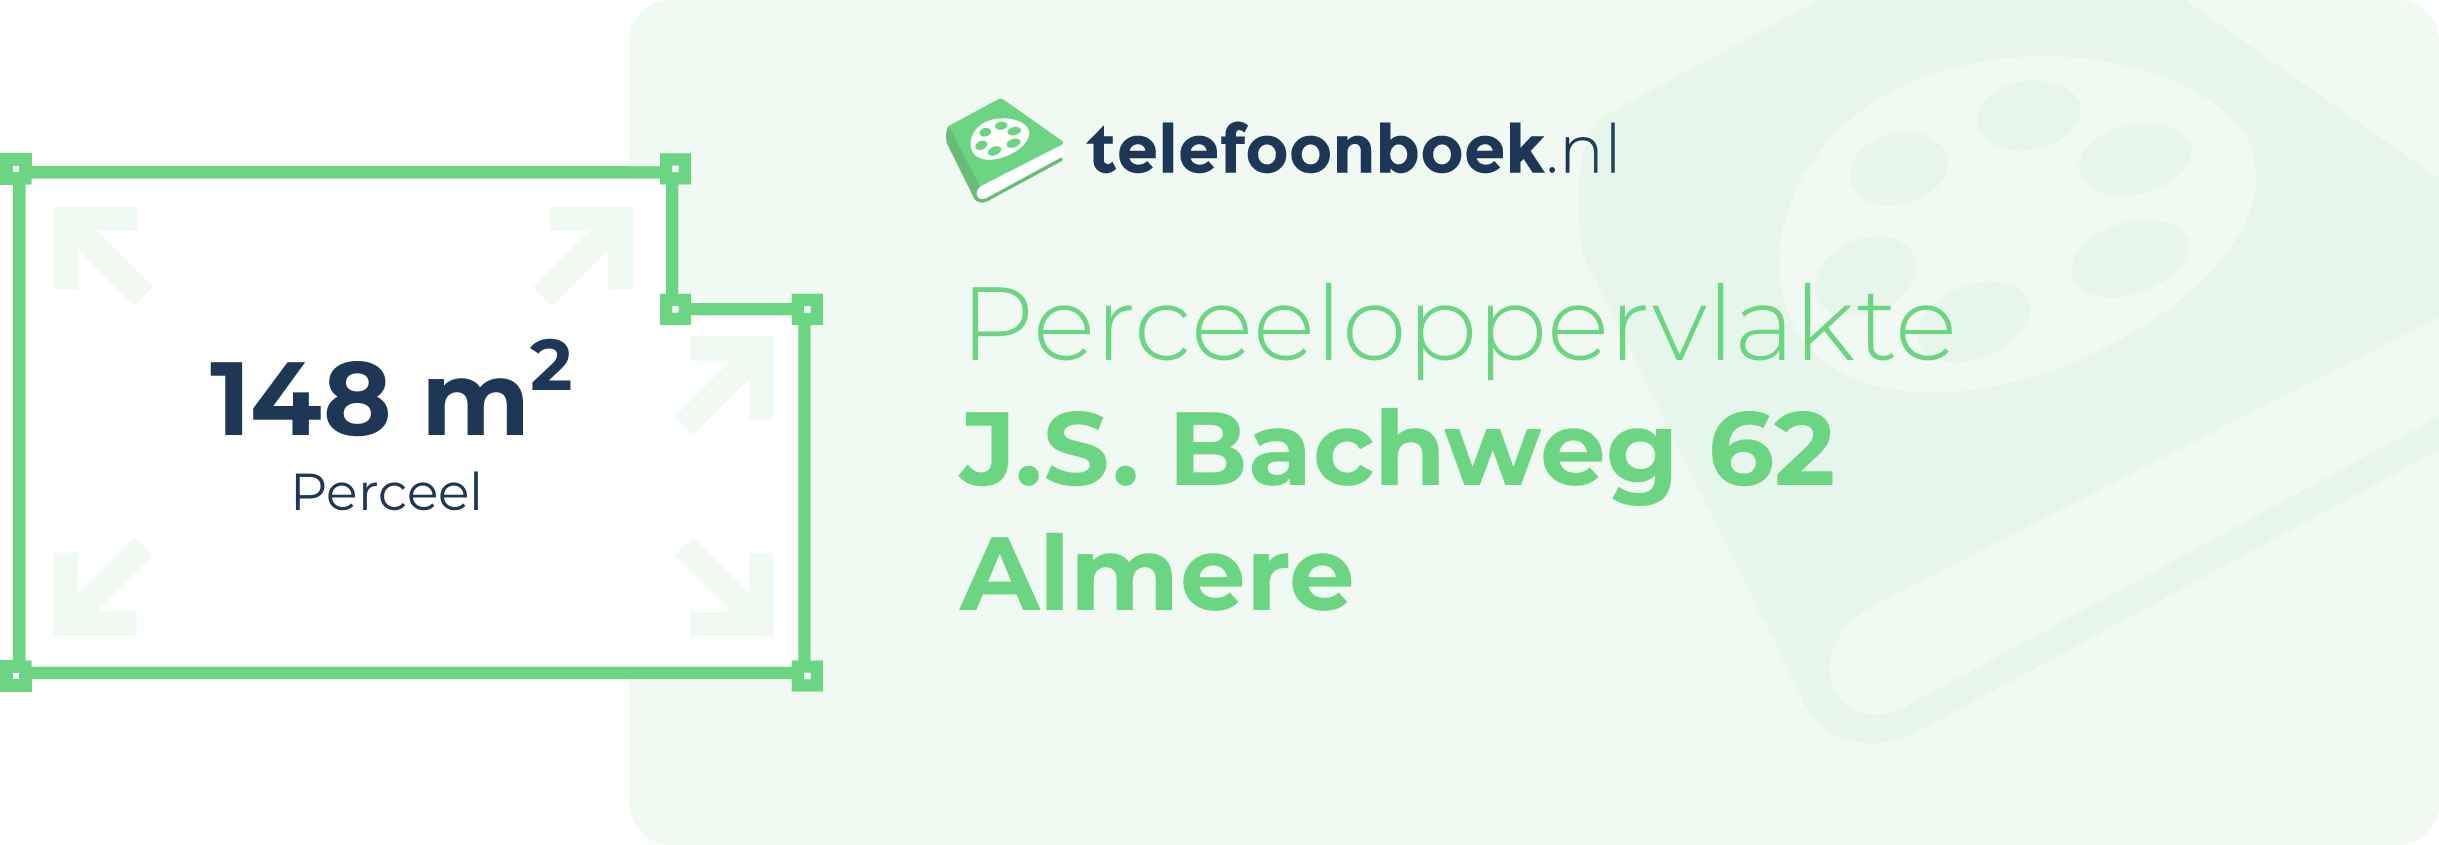 Perceeloppervlakte J.S. Bachweg 62 Almere